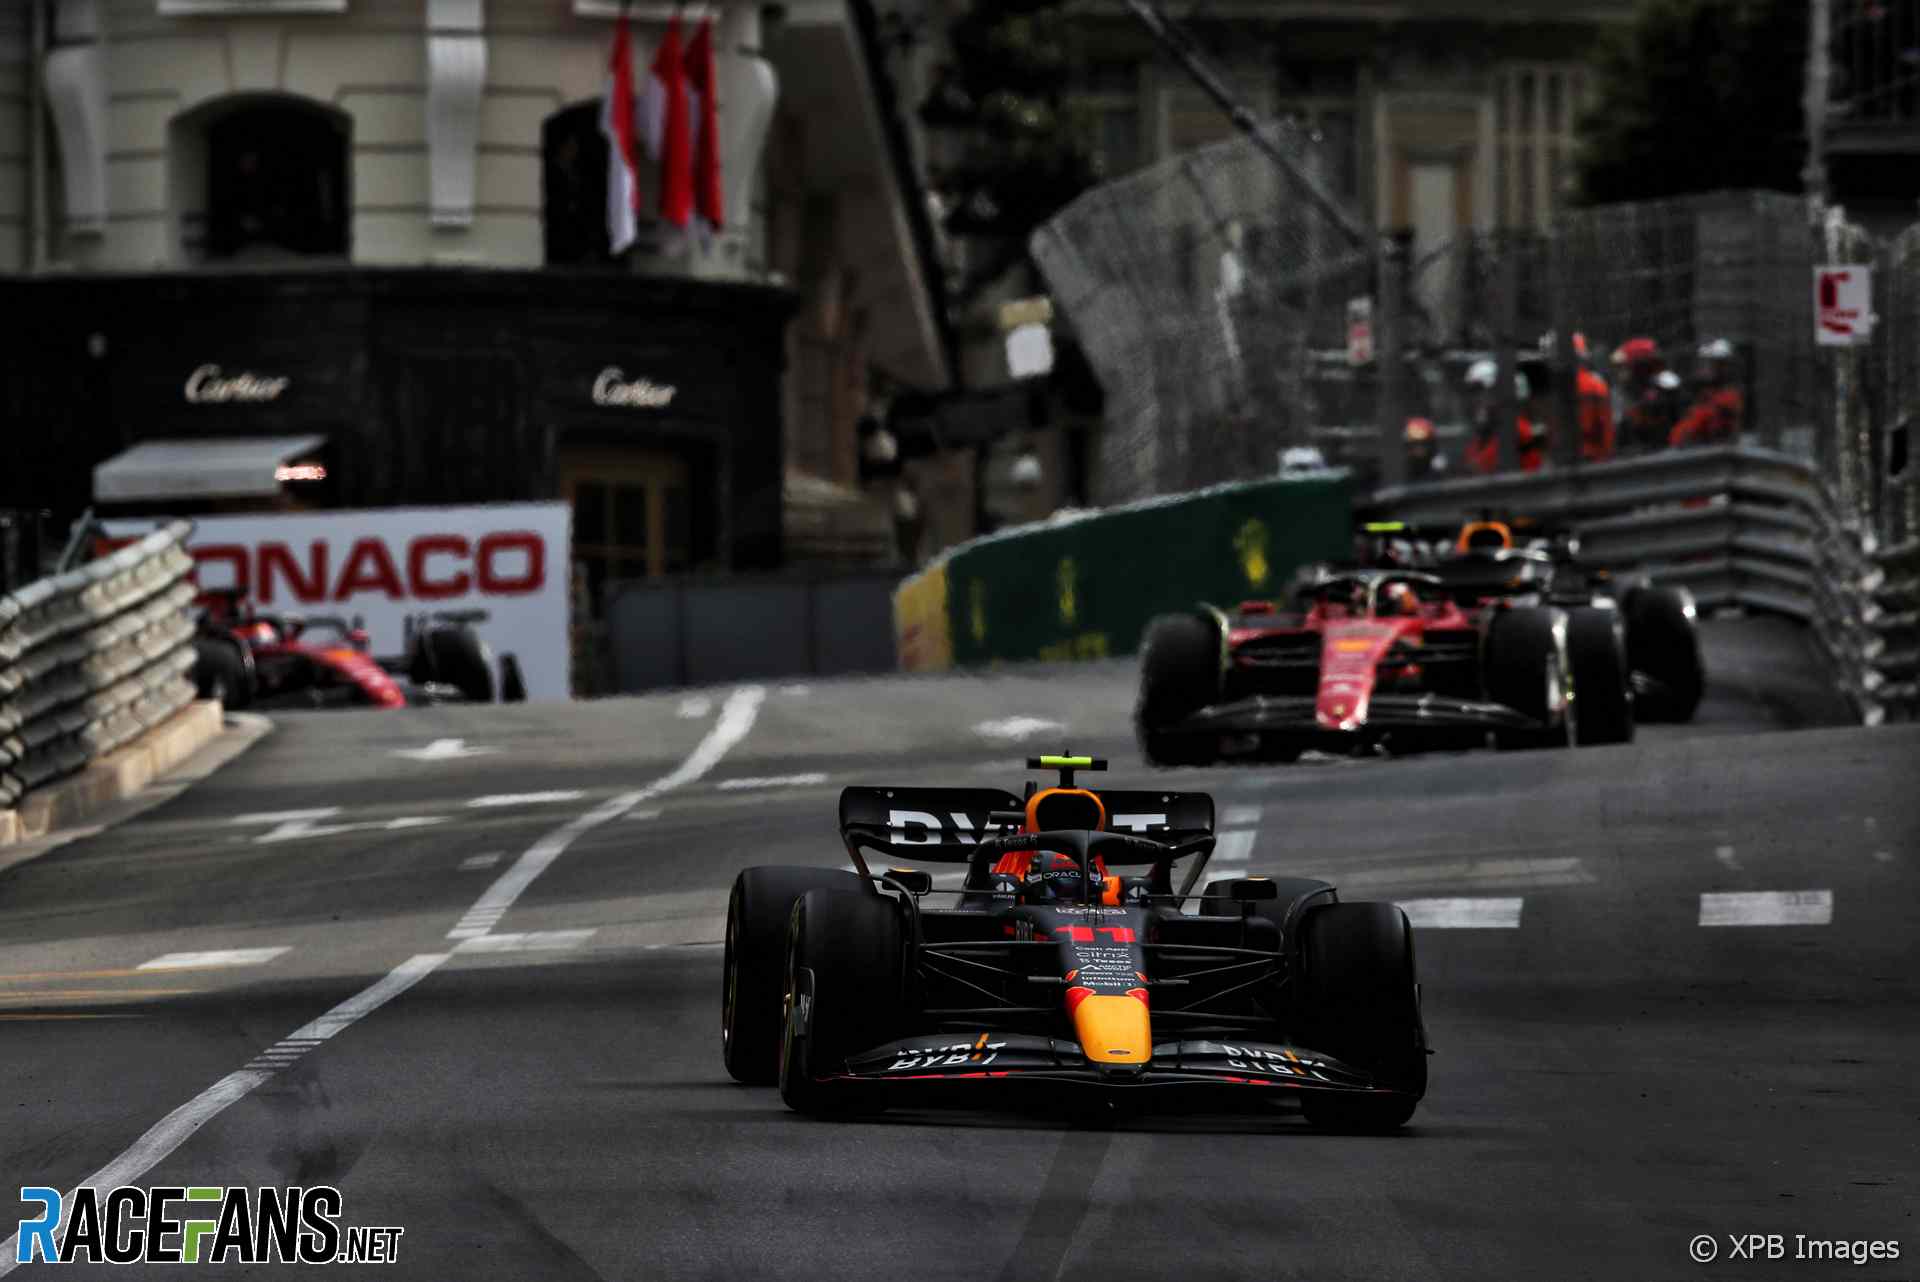 The 2022 Monaco Grand Prix was held at Monaco and won by Sergio Perez